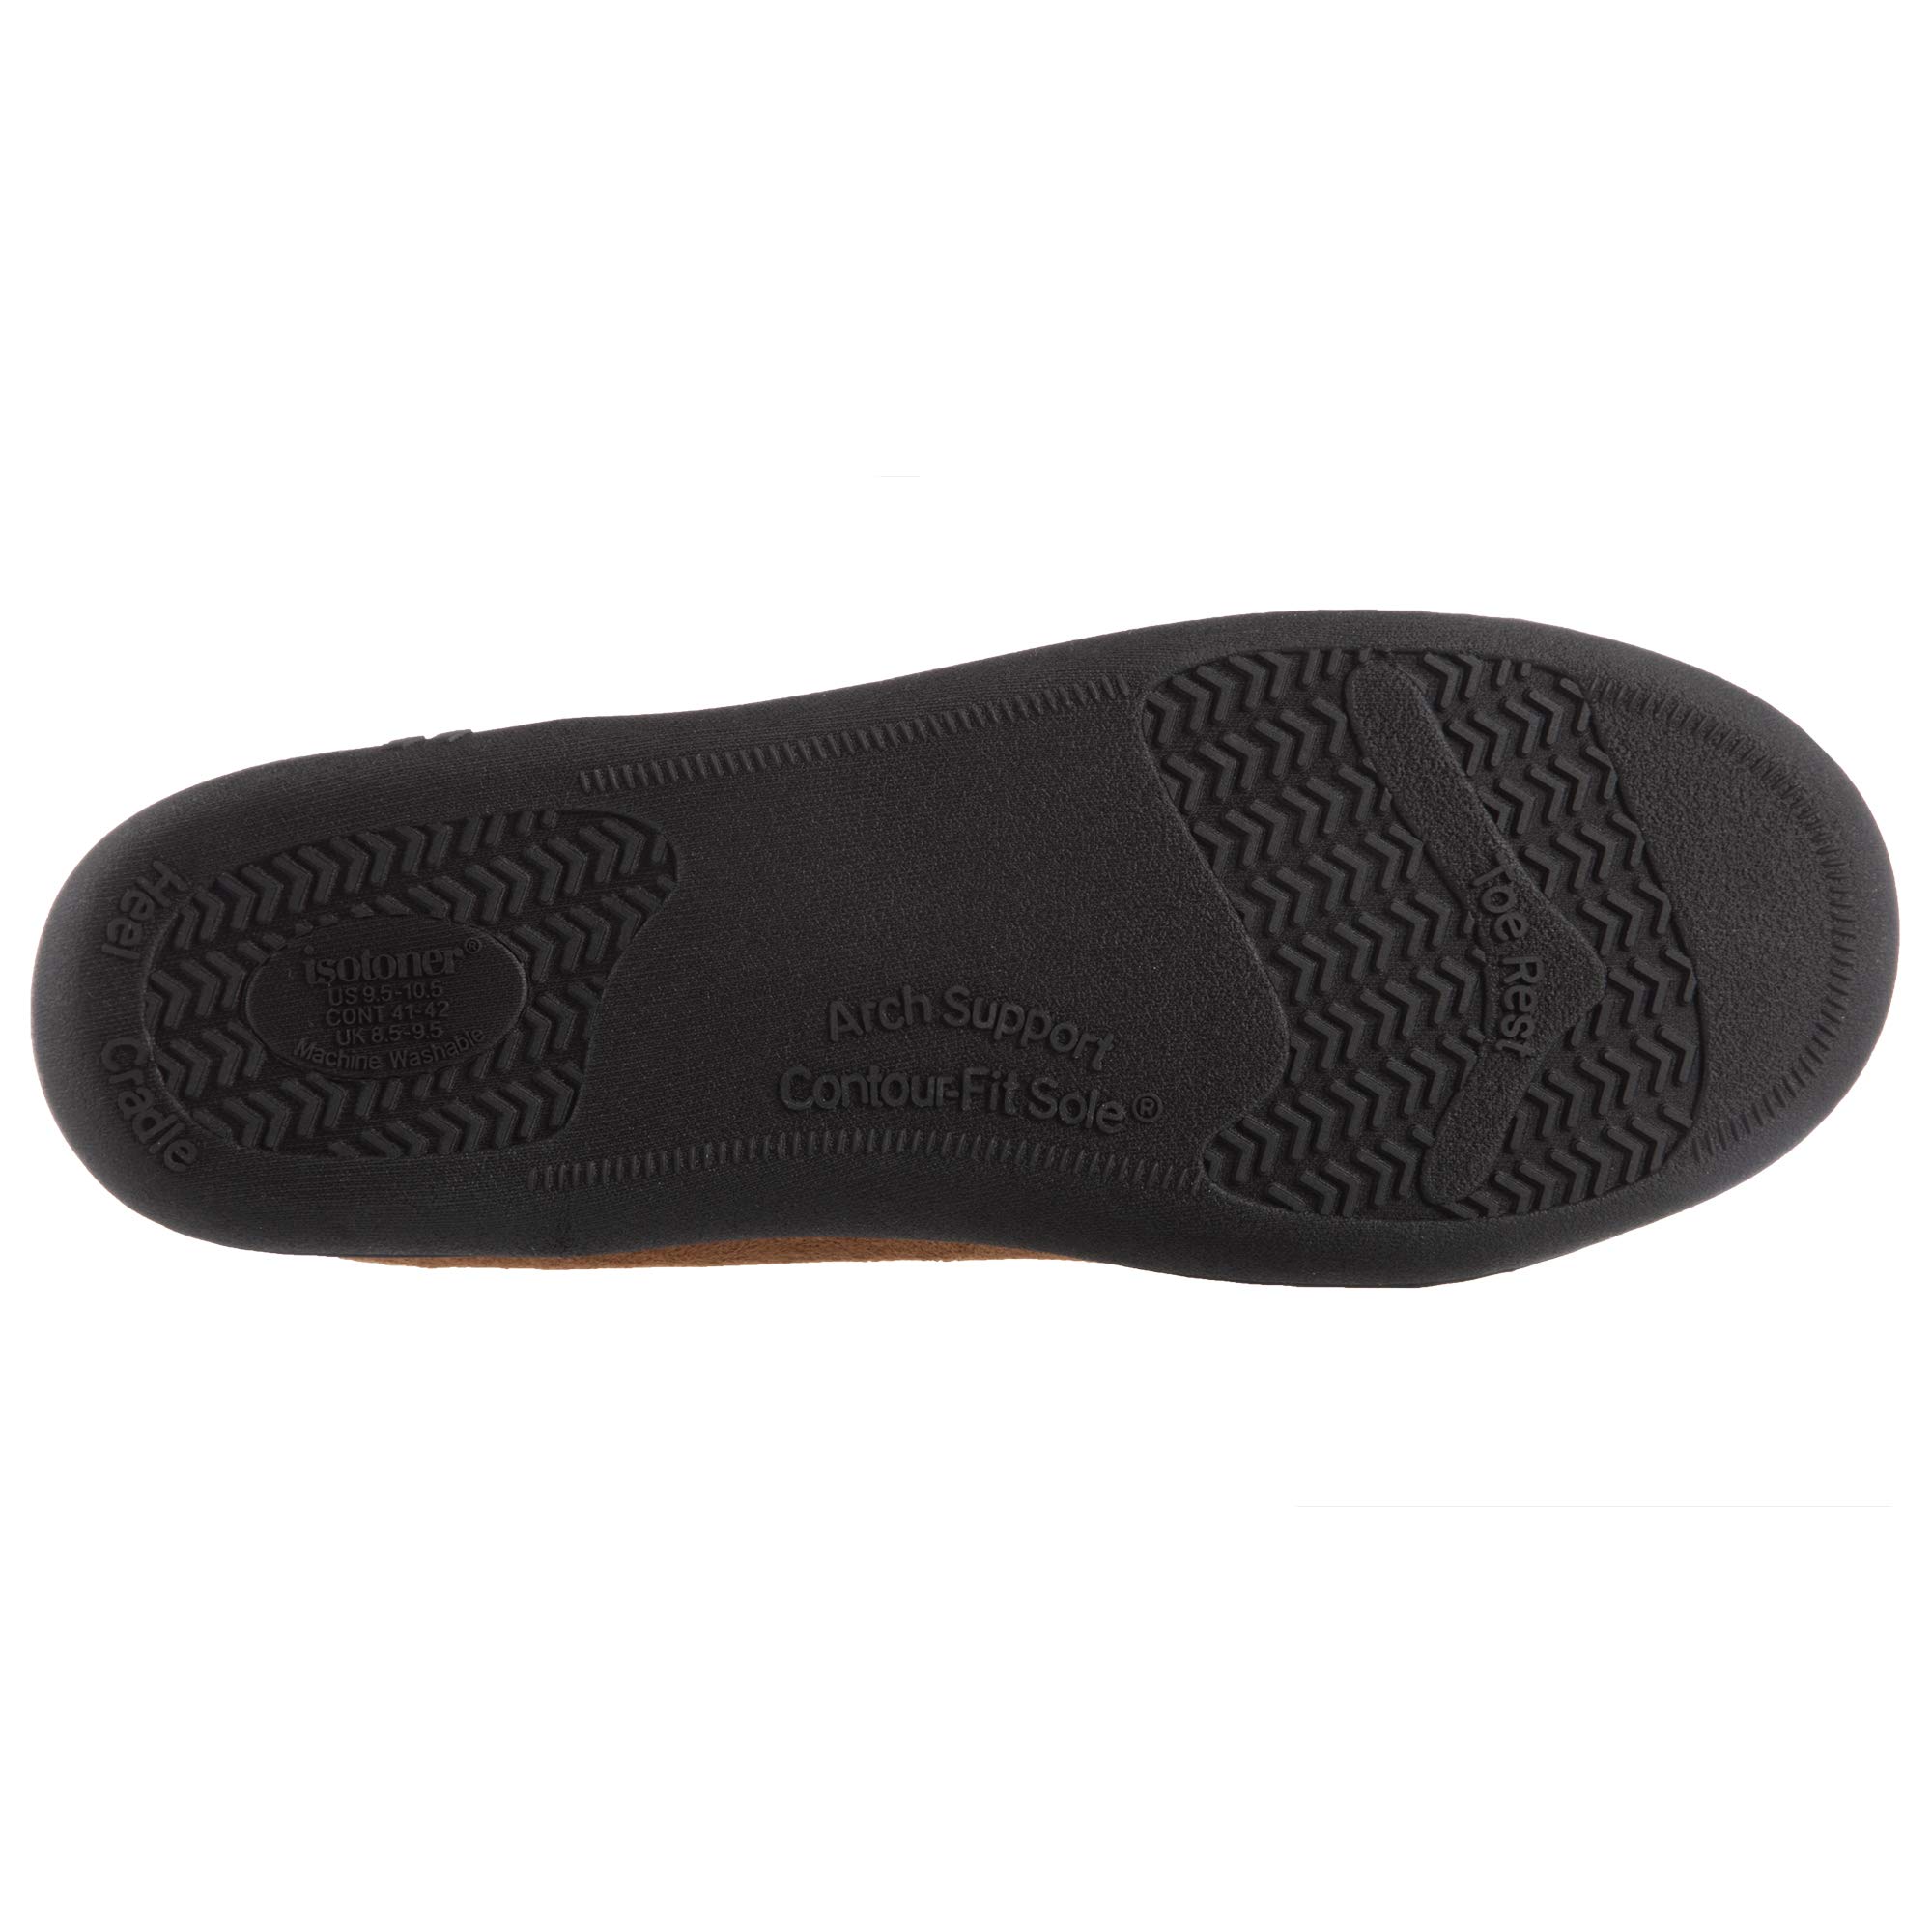 isotoner Men's Microsuede Moccasin Slipper with Cooling Memory Foam for Indoor/Outdoor Comfort